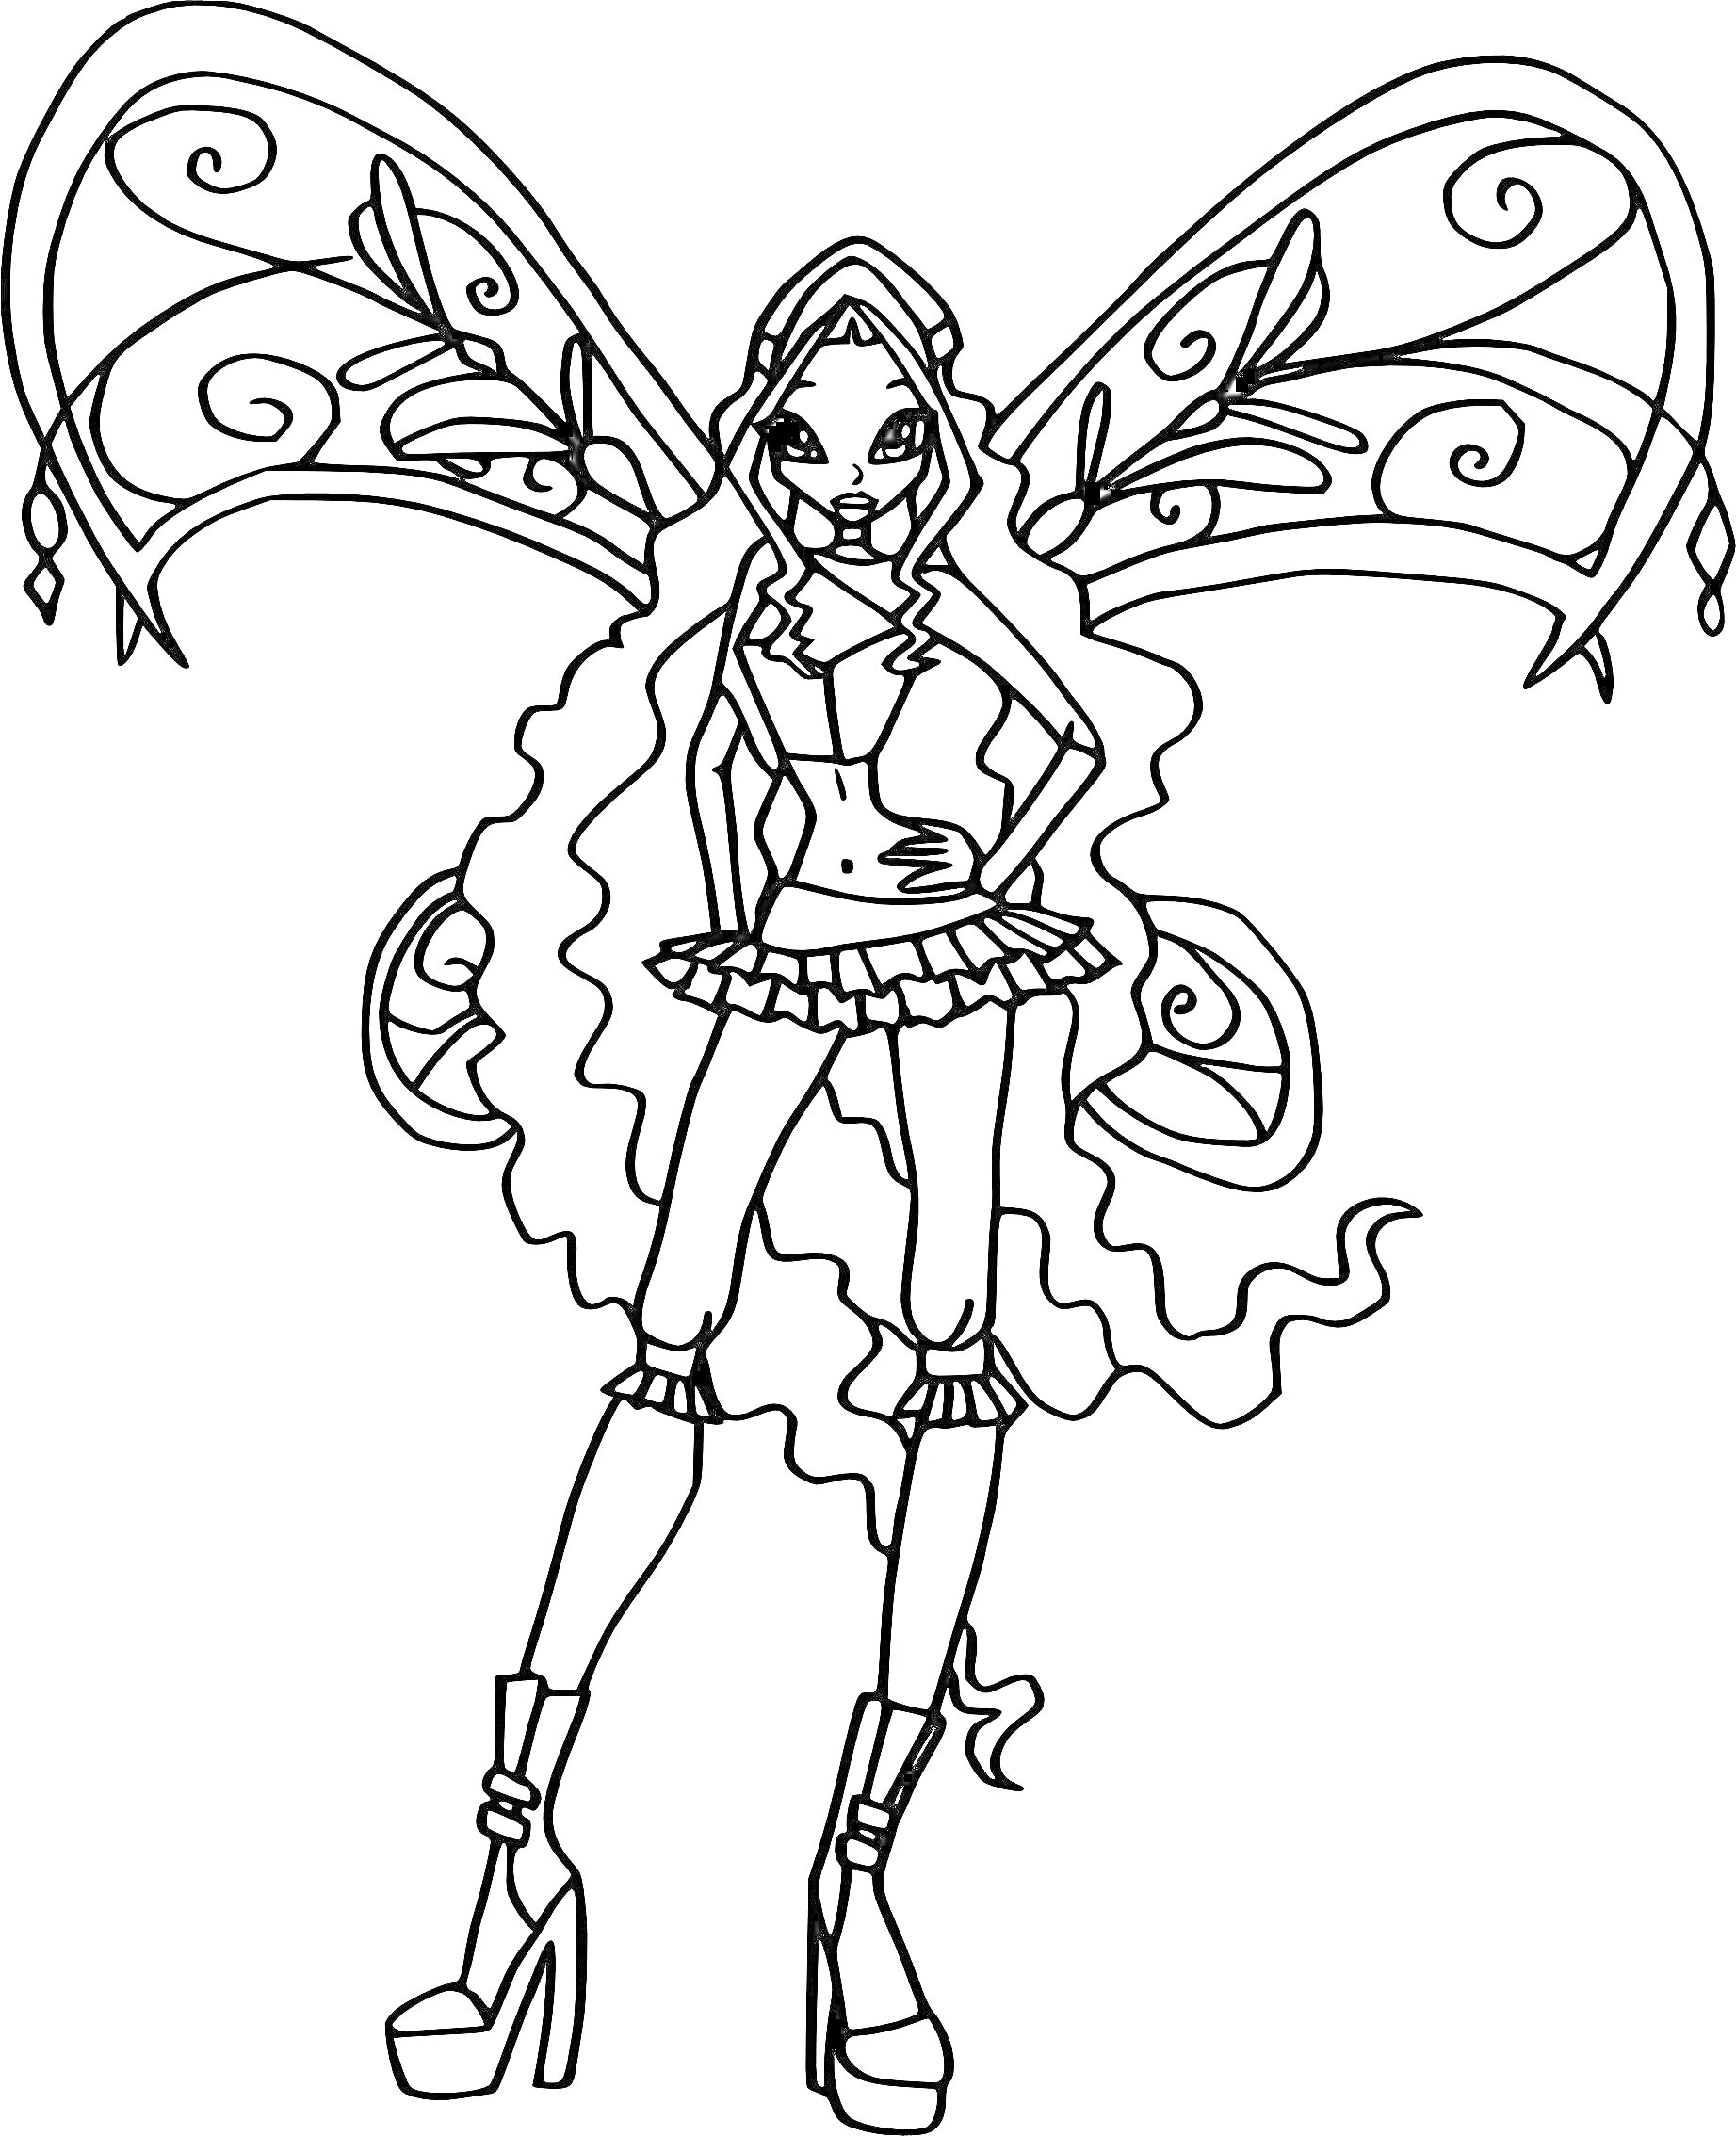 Раскраска Фея винкс в костюме Беливикс с большими крыльями и длинными волосами в сапогах на каблуках